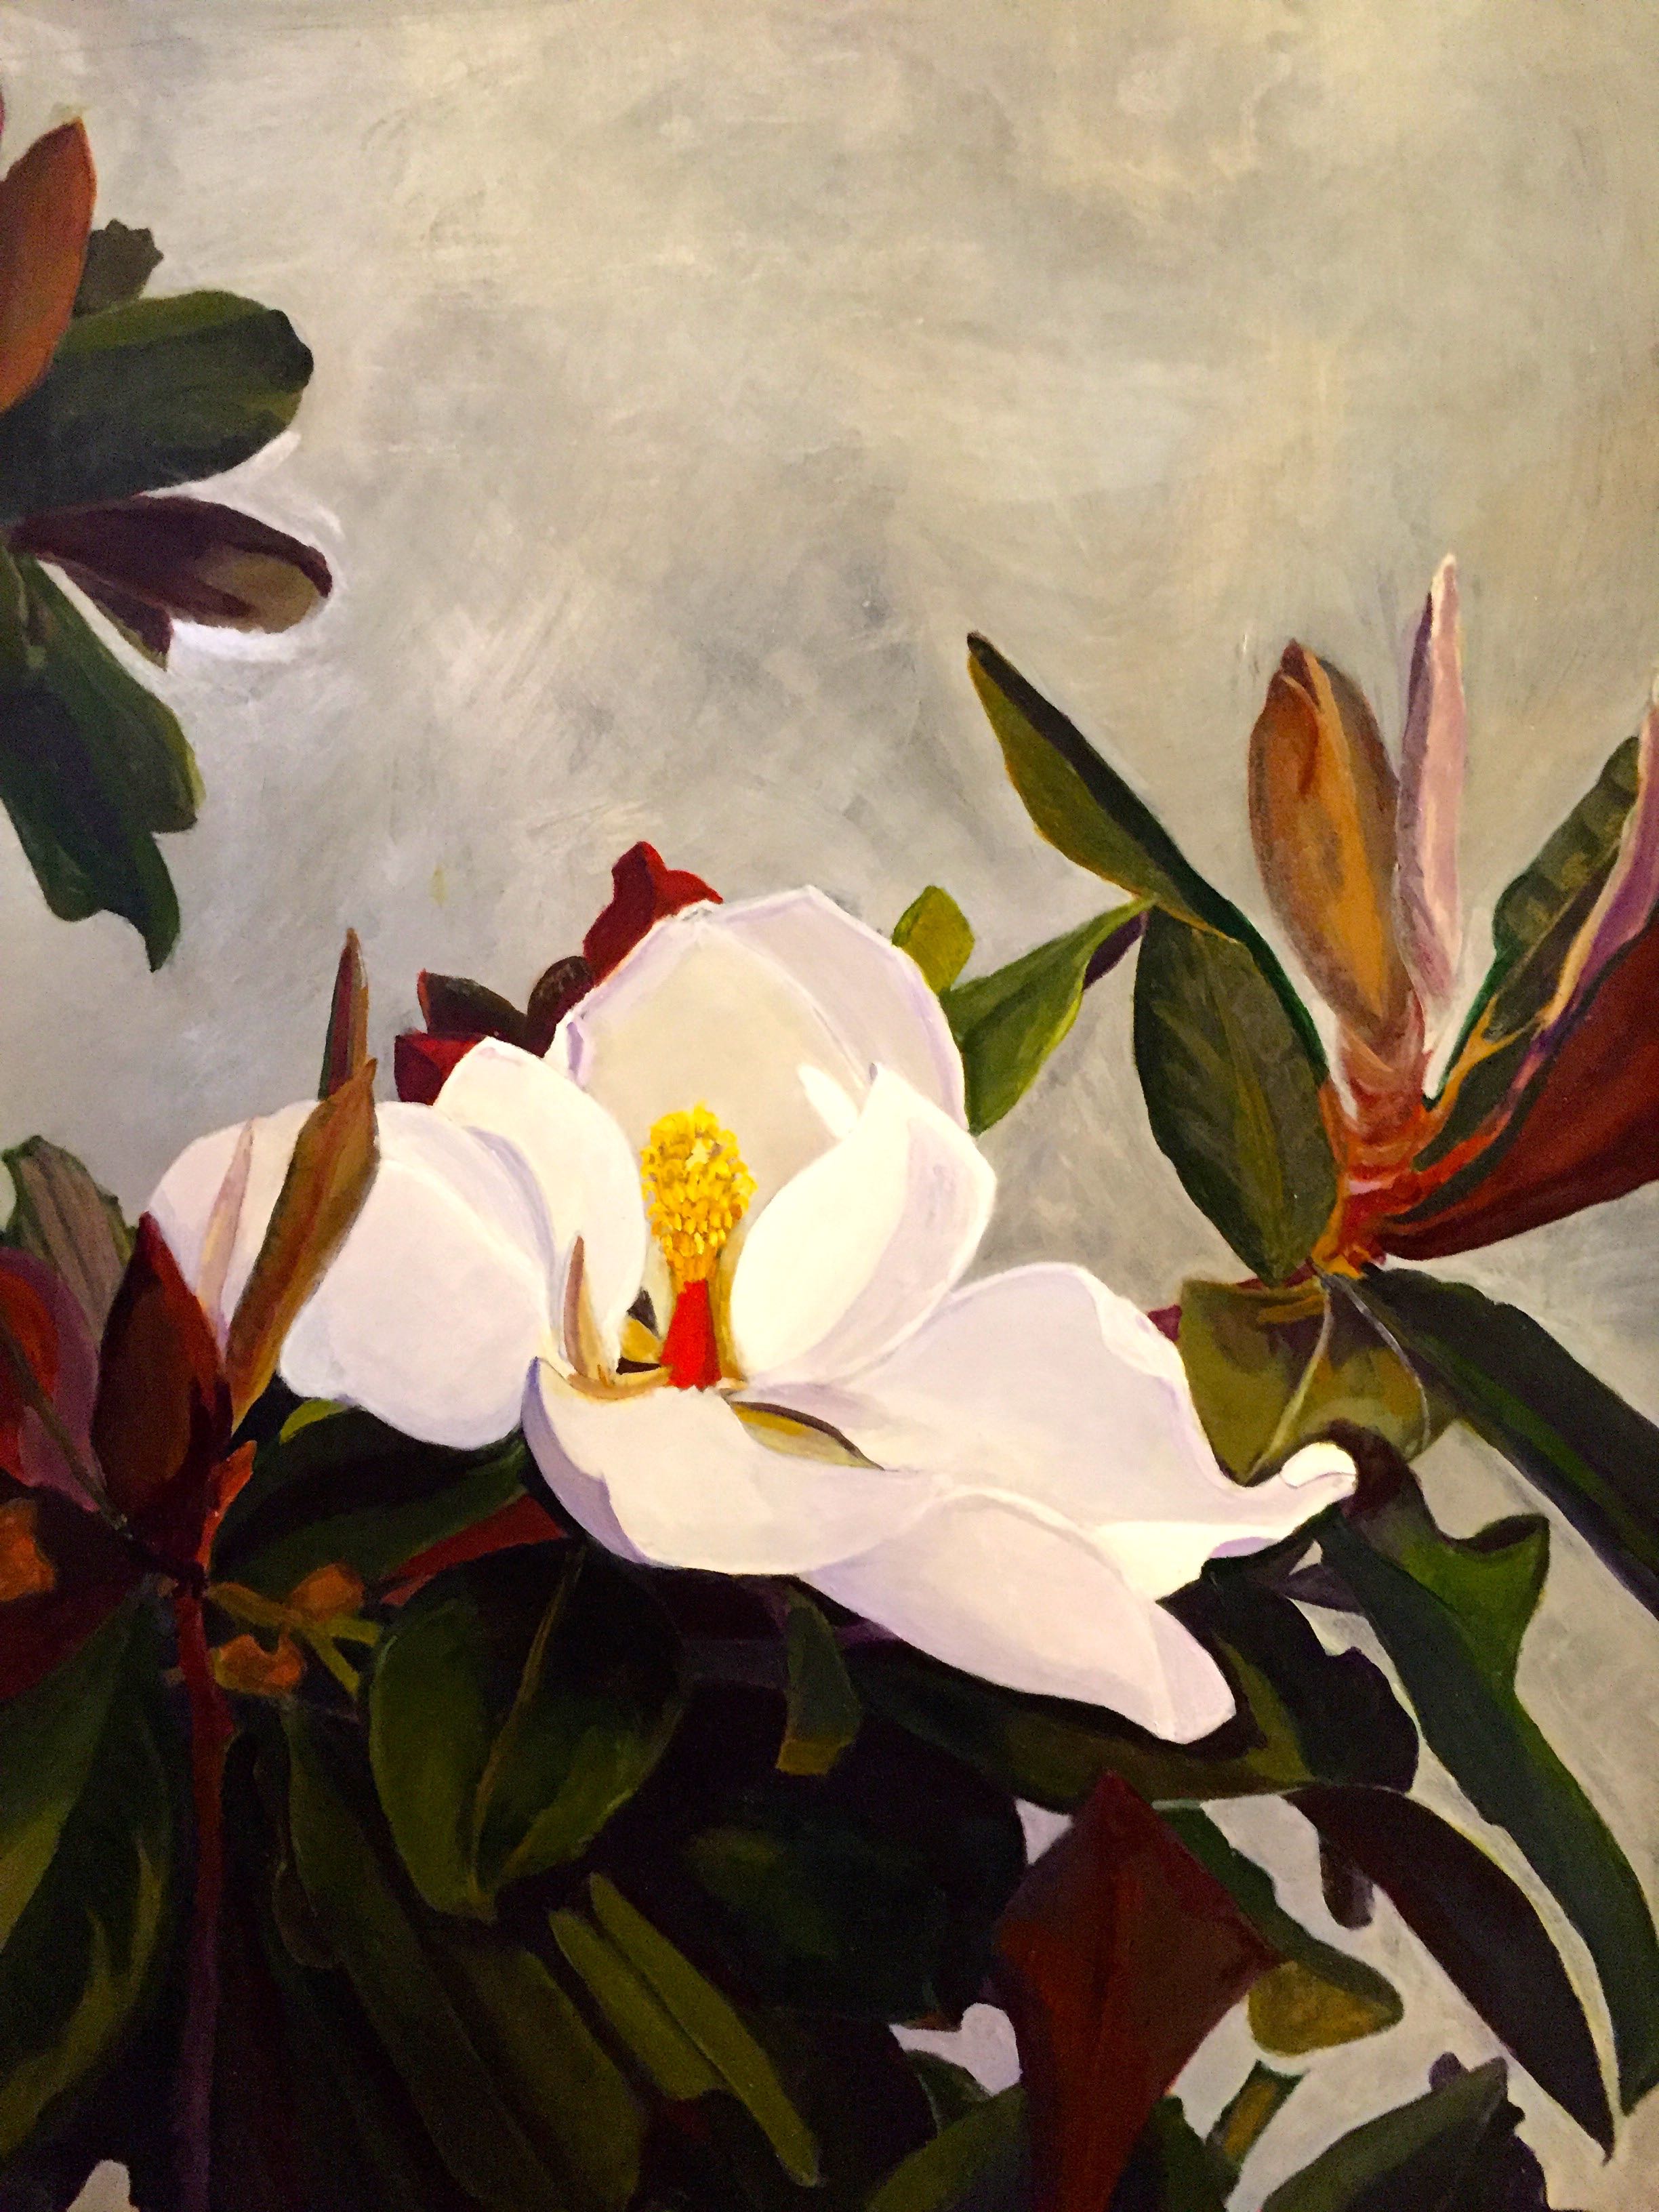 "Darwin's Magnolia grandiflora" 2016